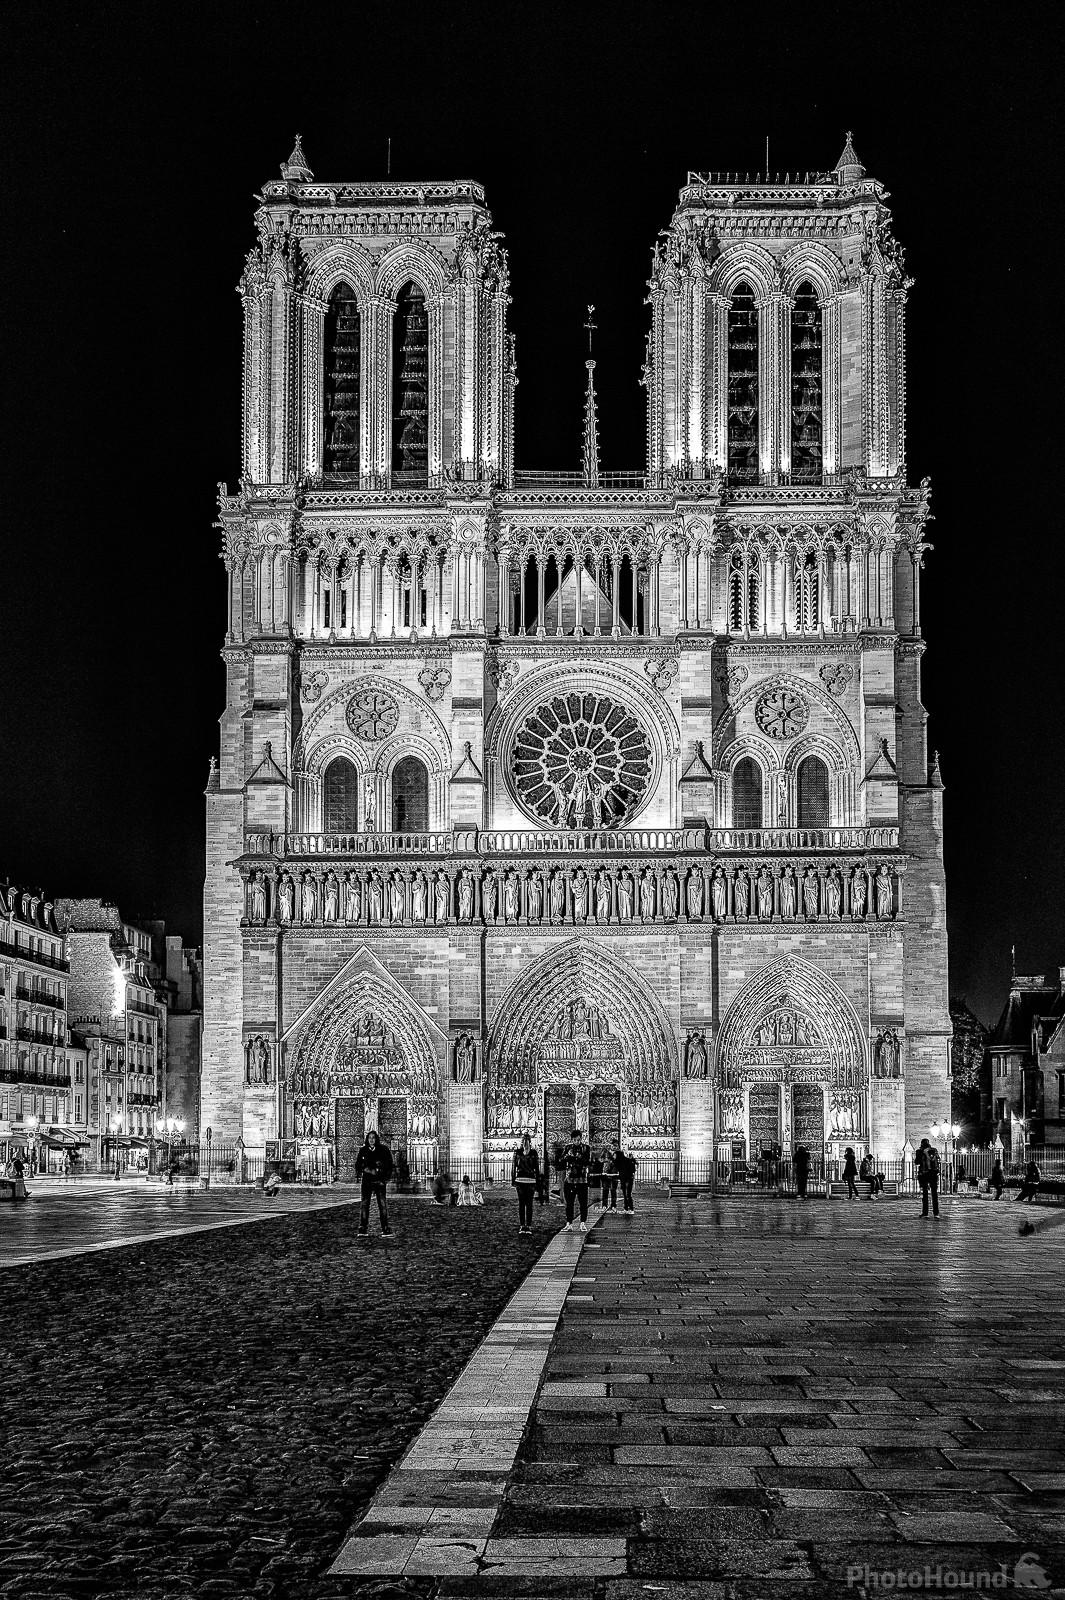 Image of Cathédrale Notre Dame de Paris seen from the Parvis Notre Dame – Place Jean-Paul II by Frédéric Monin